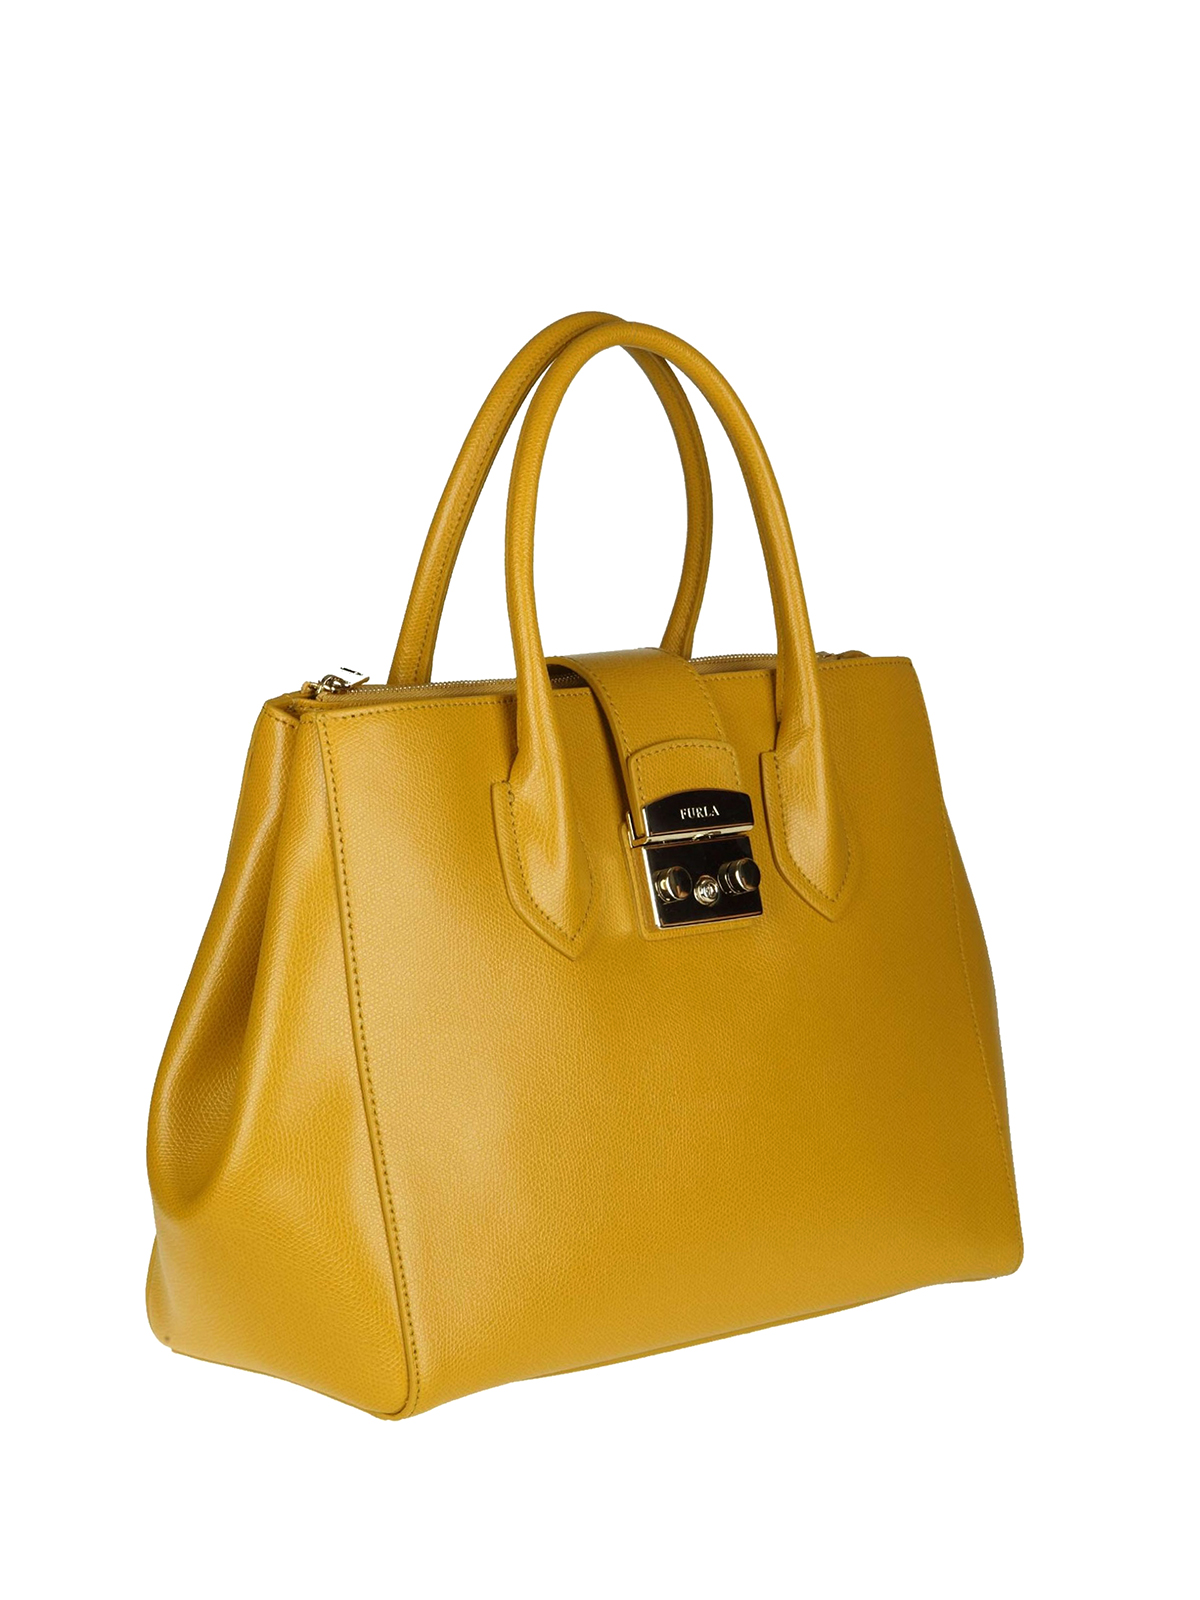 Furla - Metropolis dark yellow leather handbag - totes bags - 978102